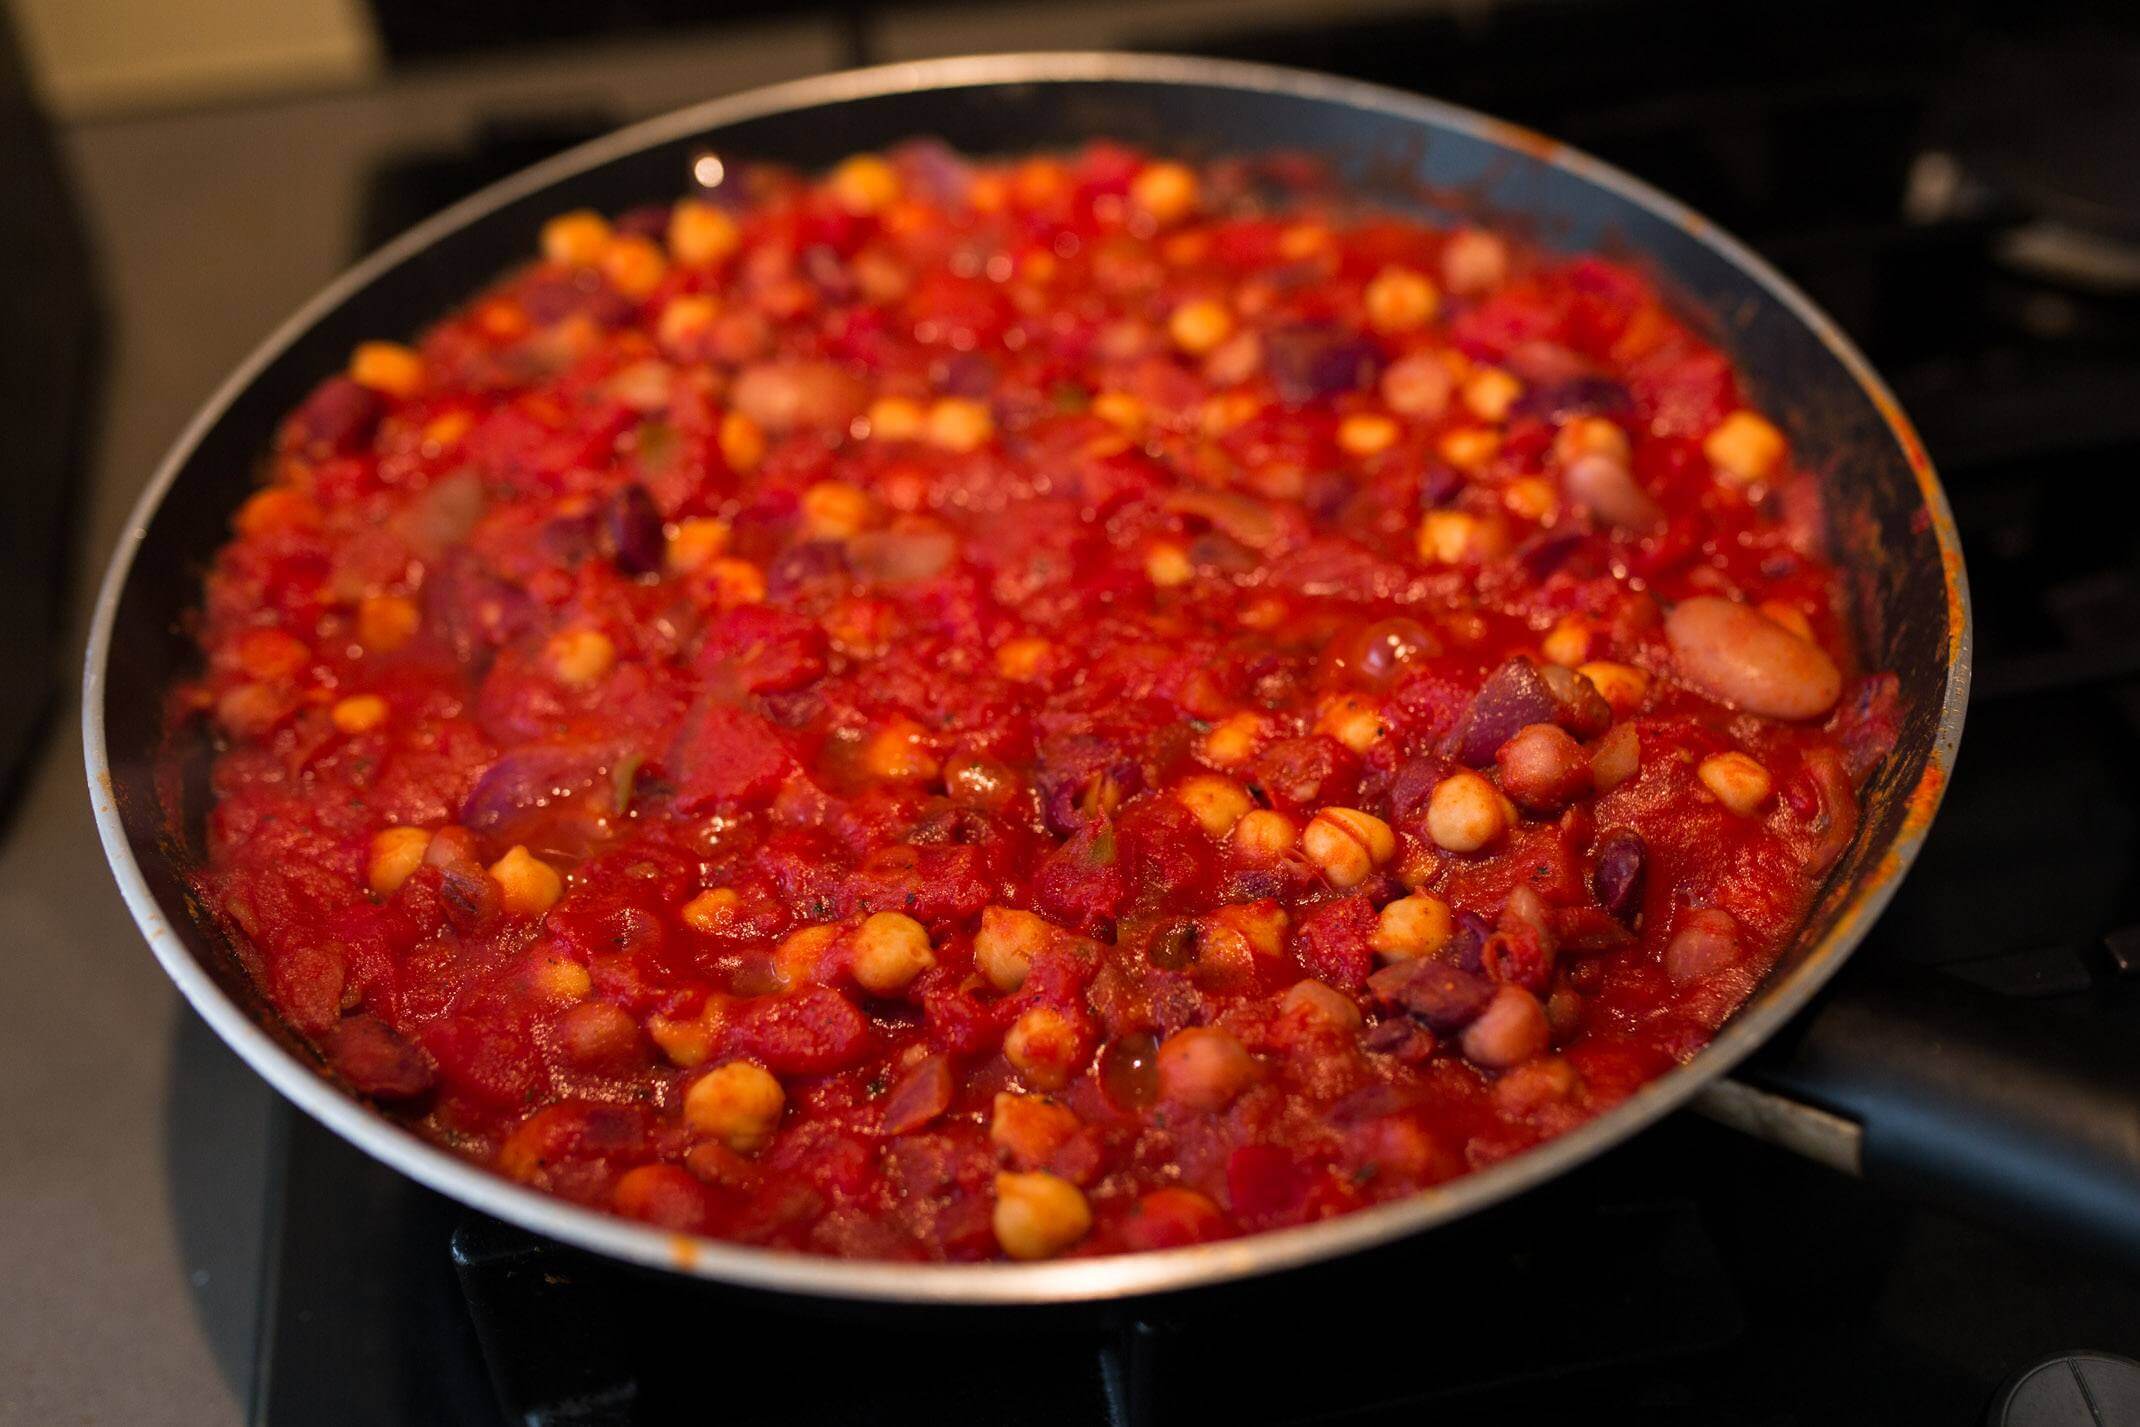 A quick cajun chickpea and tomato dish recipe